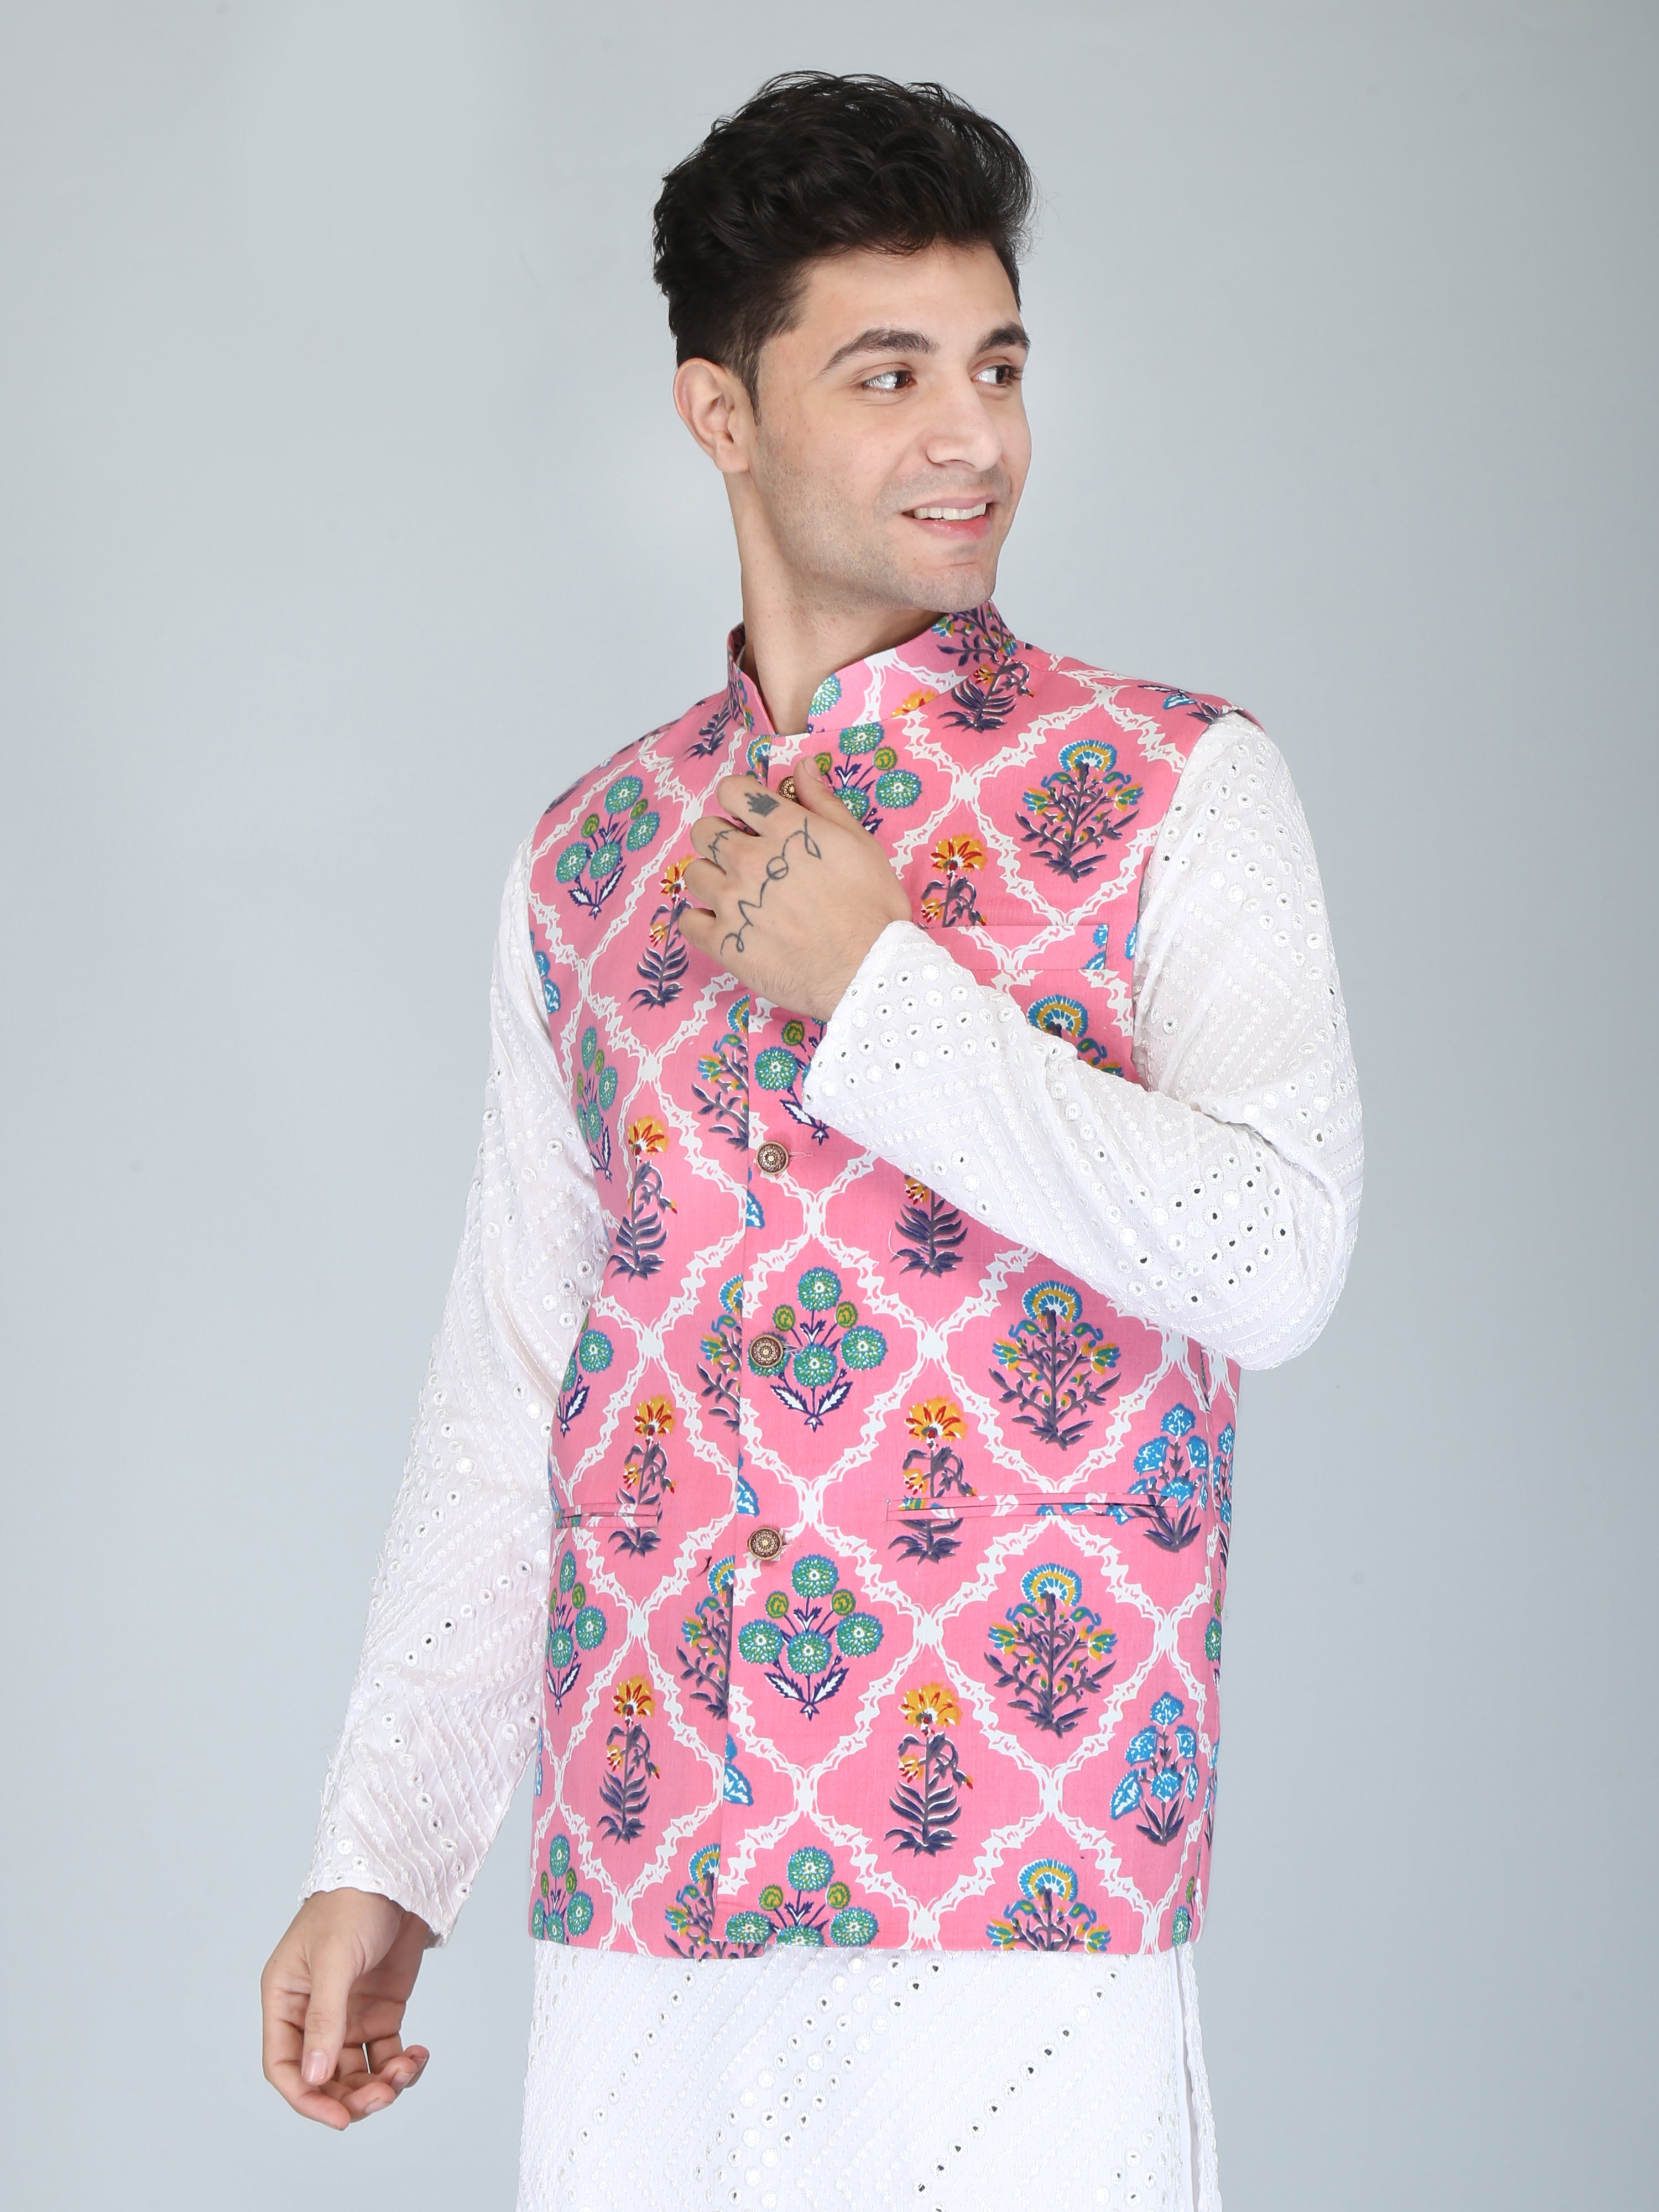 Firangi Yarn Cotton Block Printed Modi/Nehru Jacket Pink Bouquet For Haldi, Mehendi, Sangeet, Wedding, Diwali and More